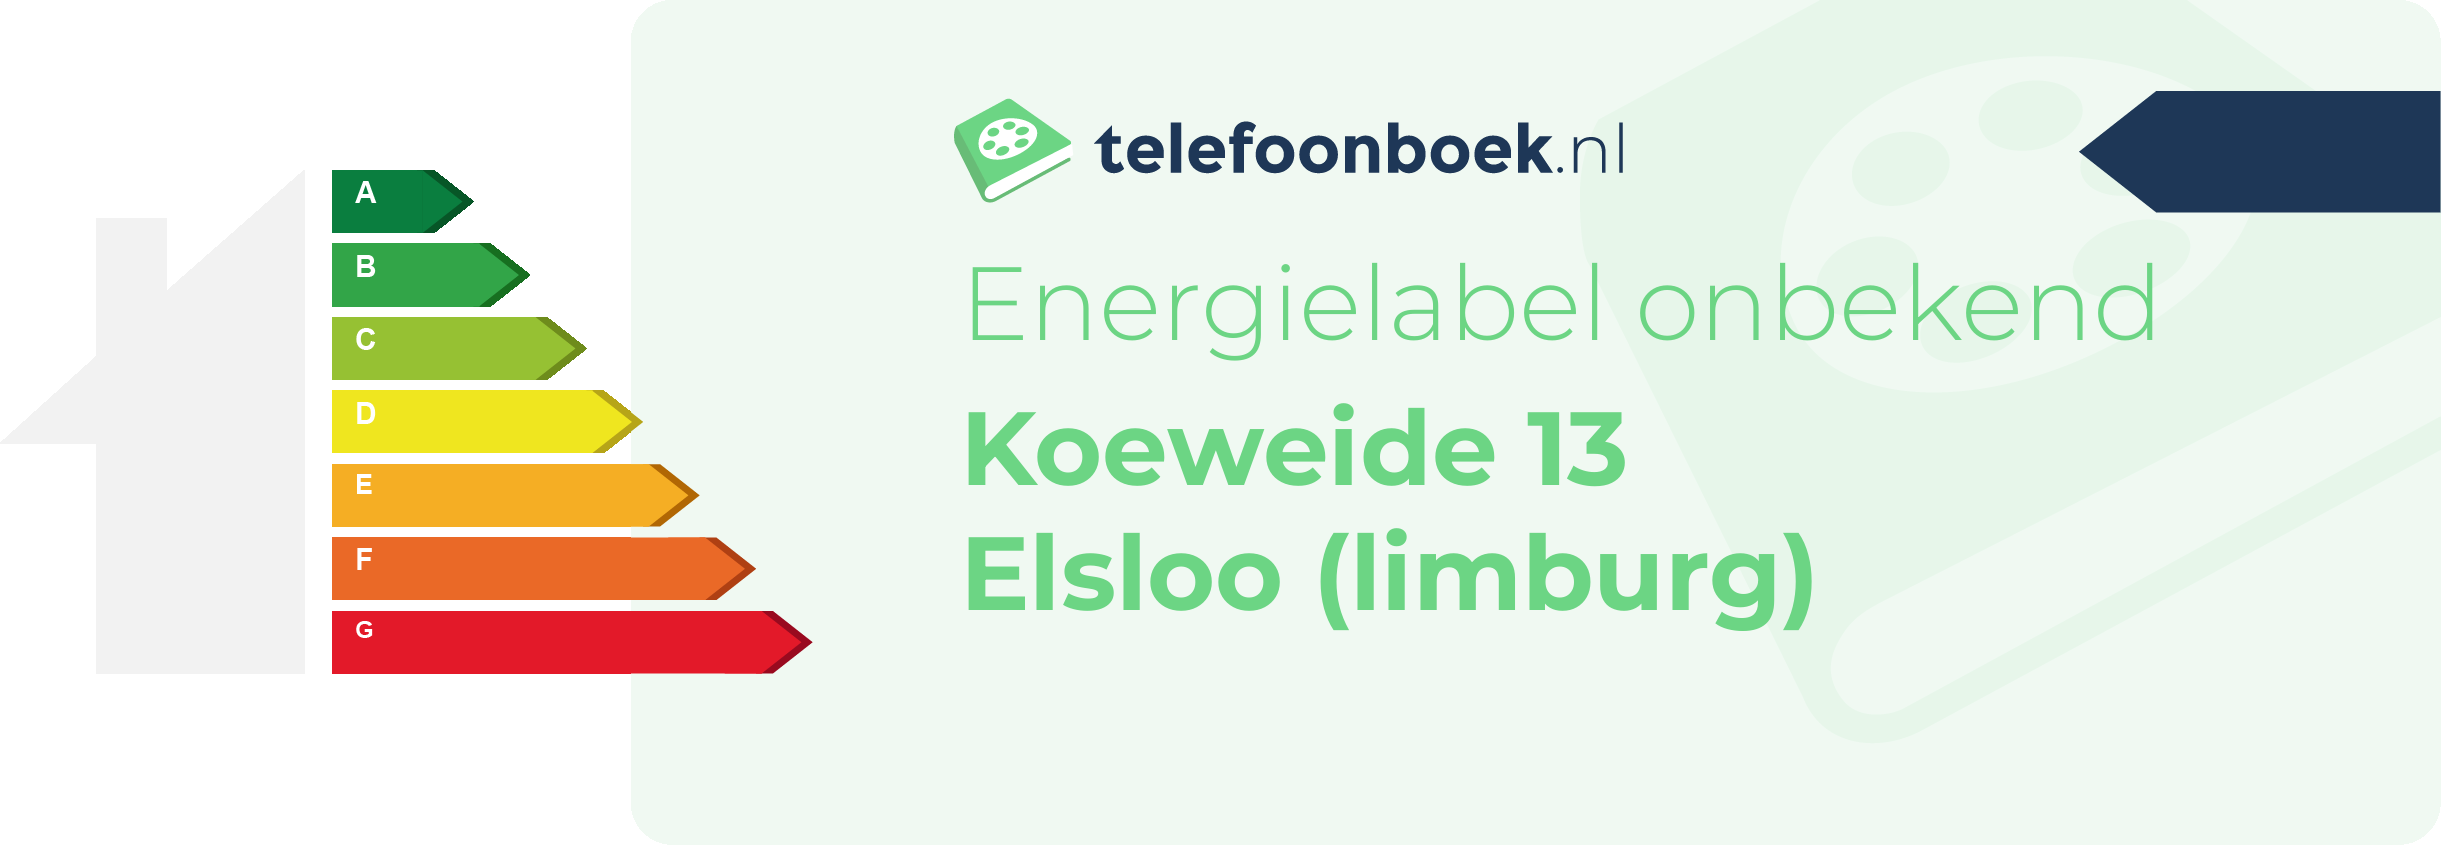 Energielabel Koeweide 13 Elsloo (Limburg)